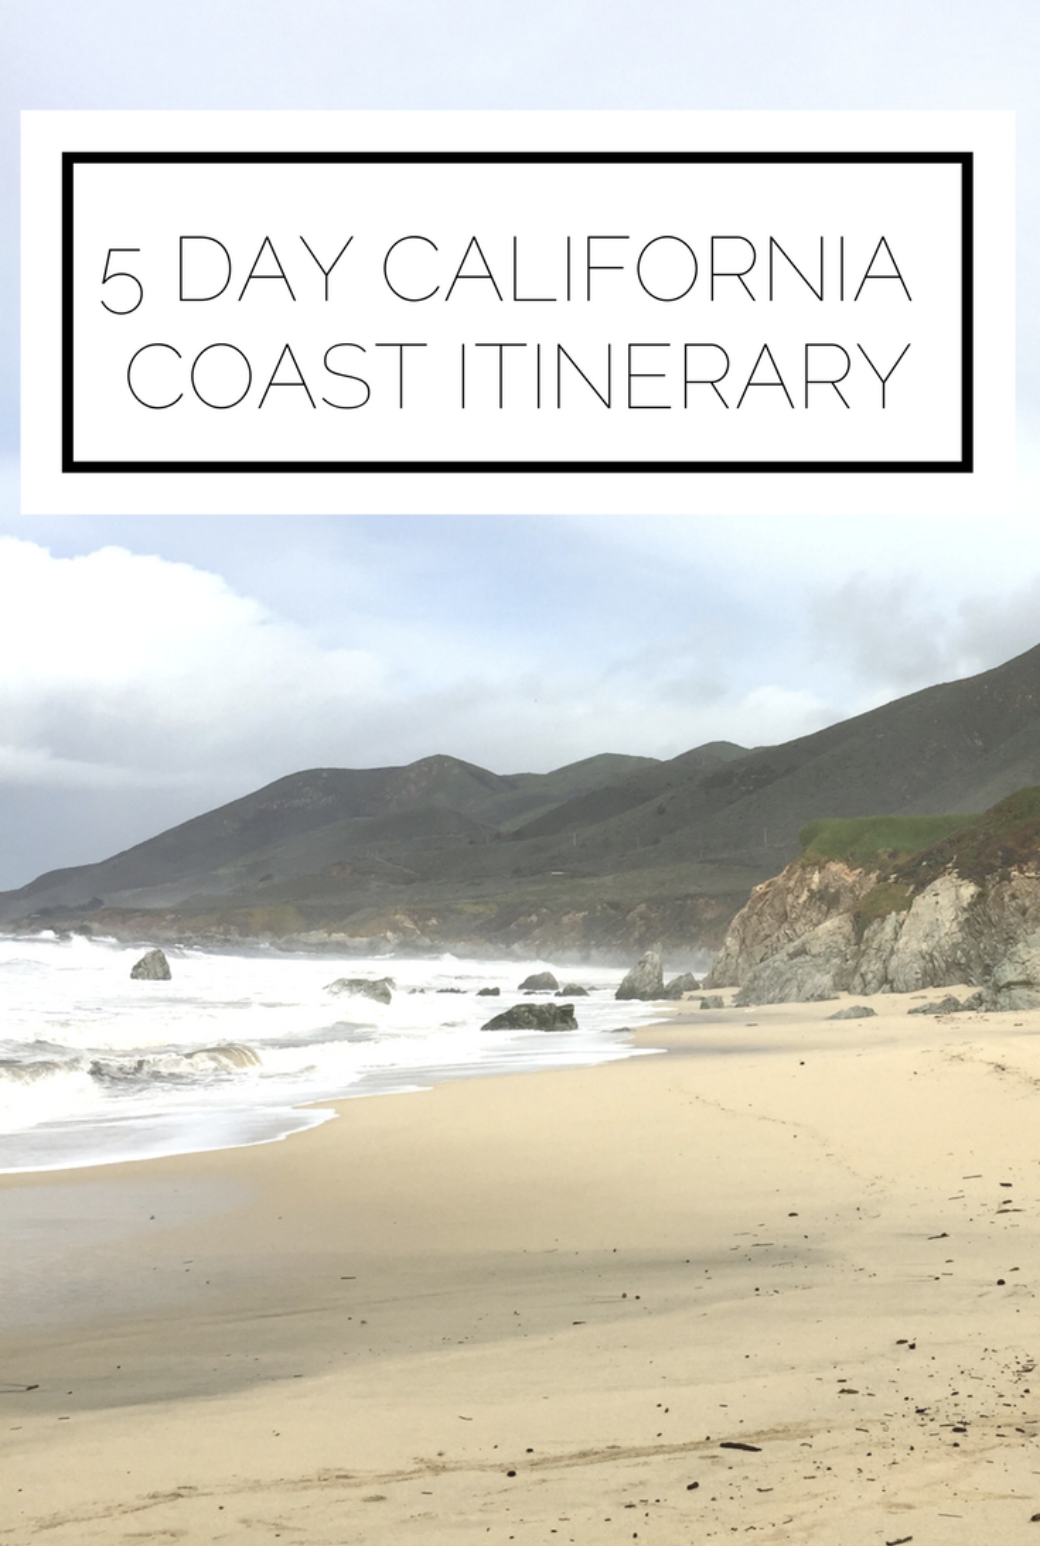 5 Day California Coast Itinerary